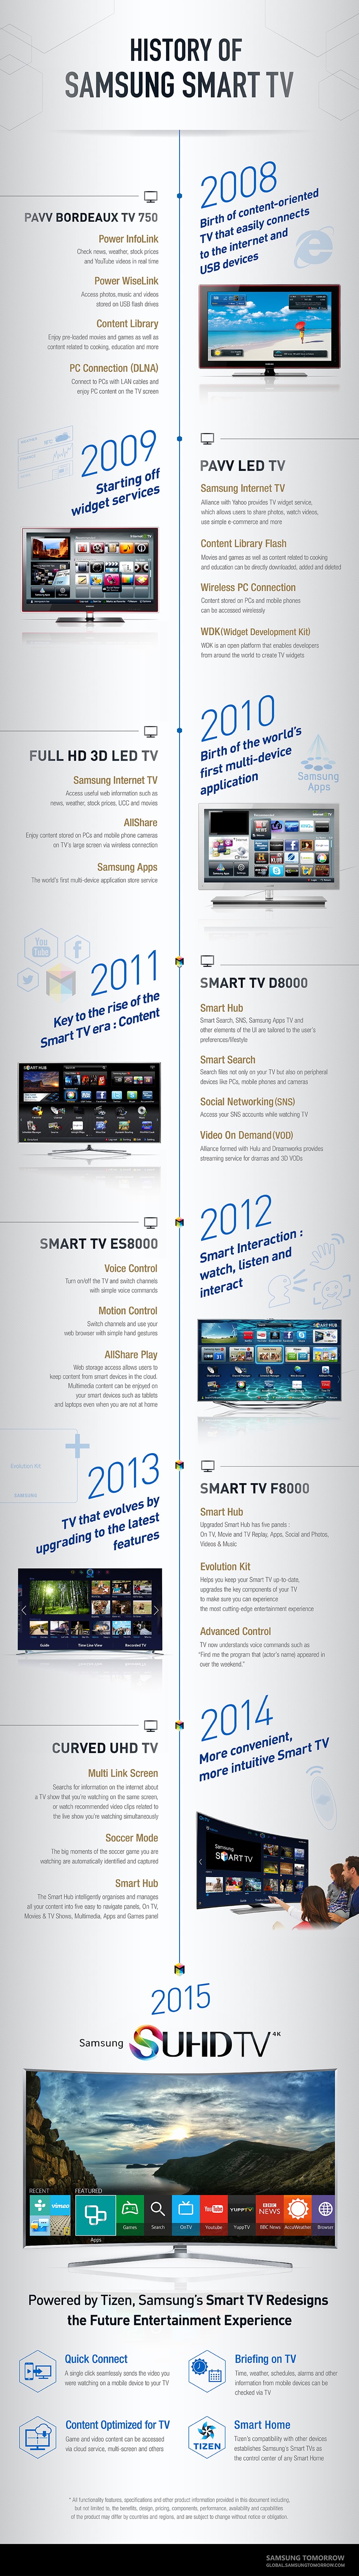 Samsung Tizen TV